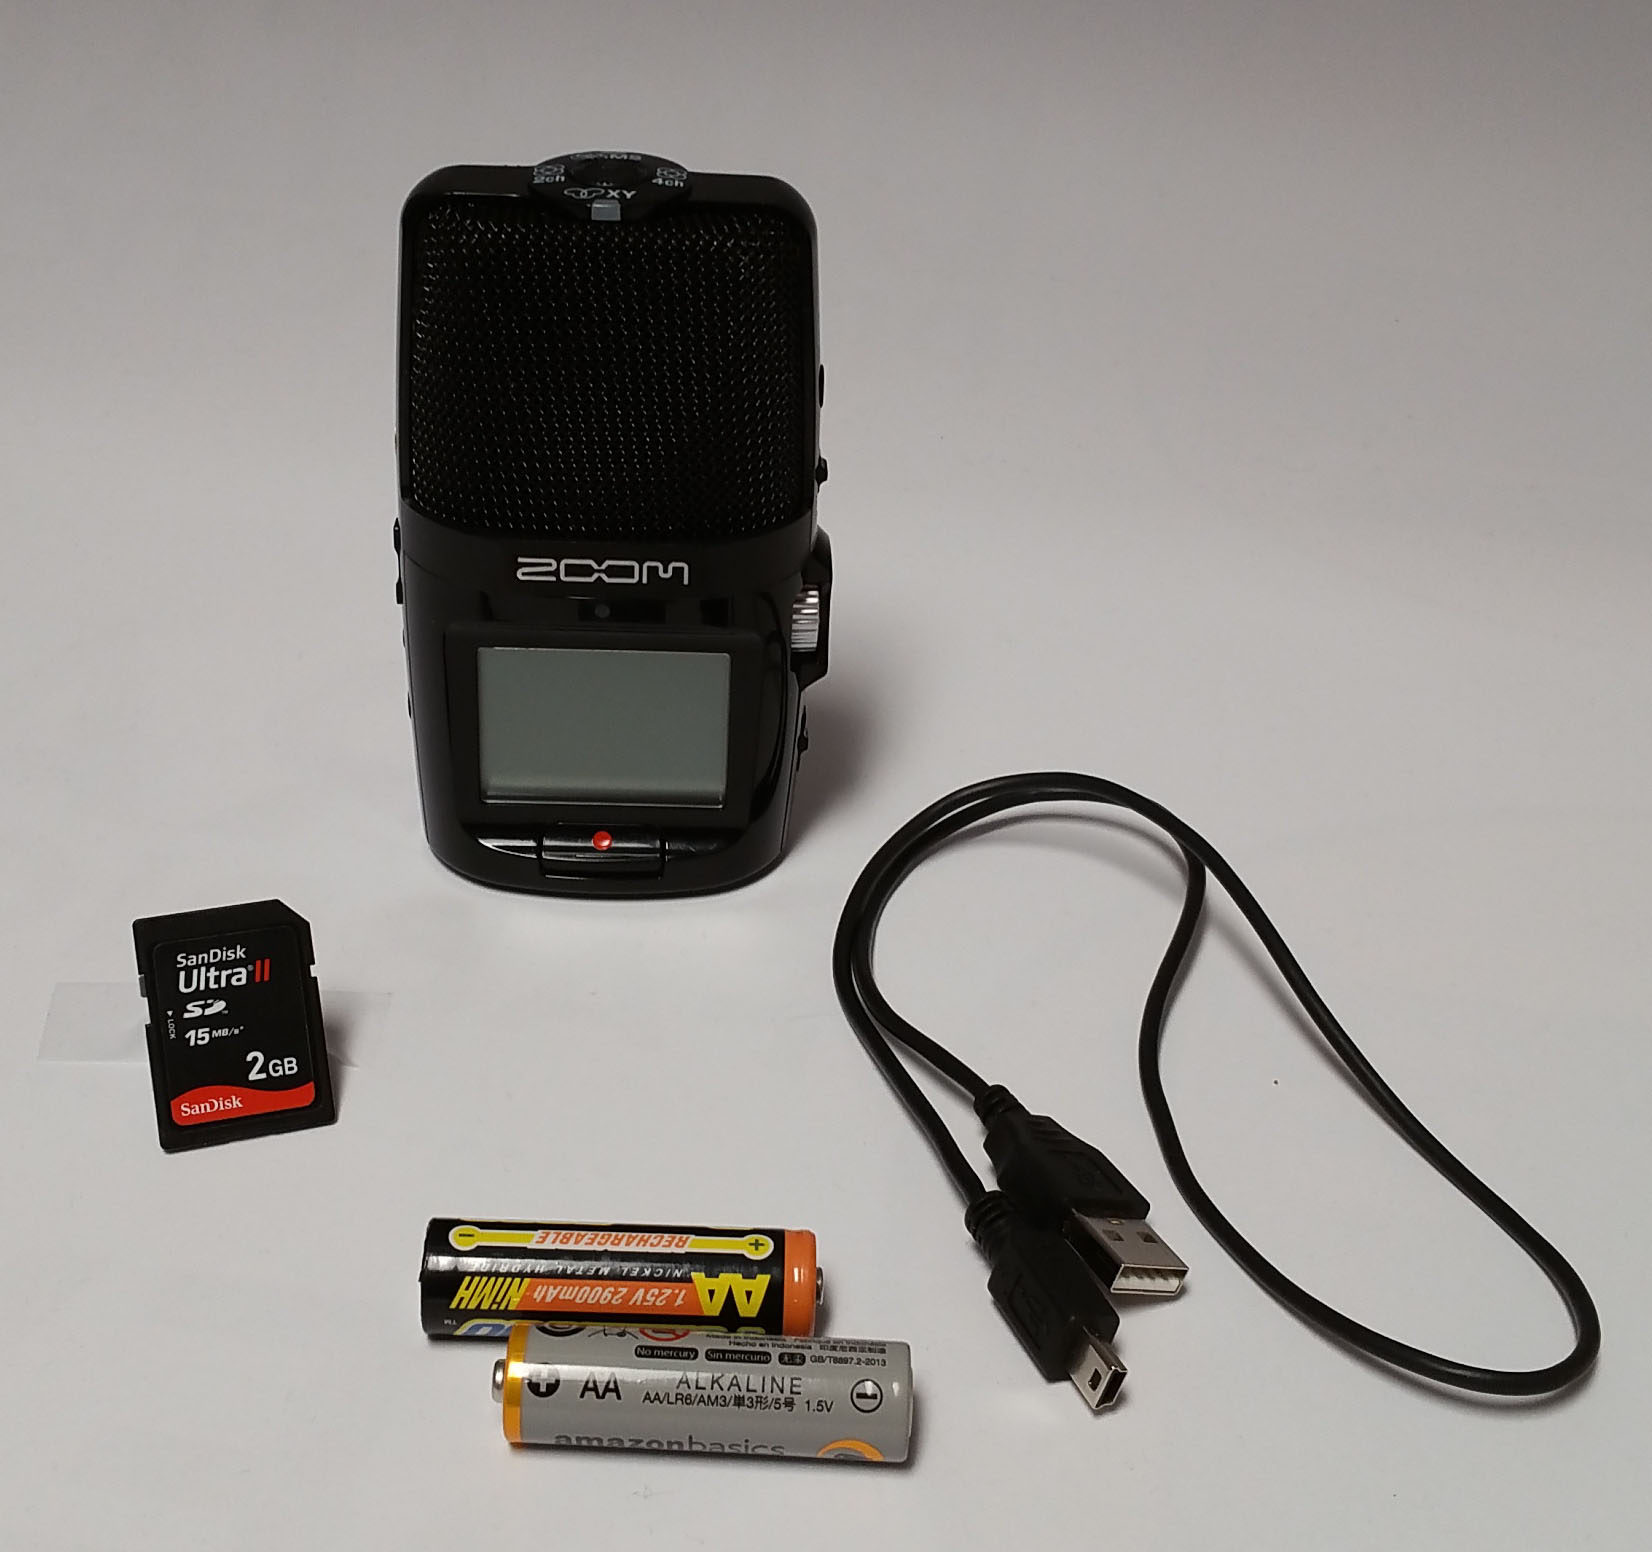 Zoom audio recorder